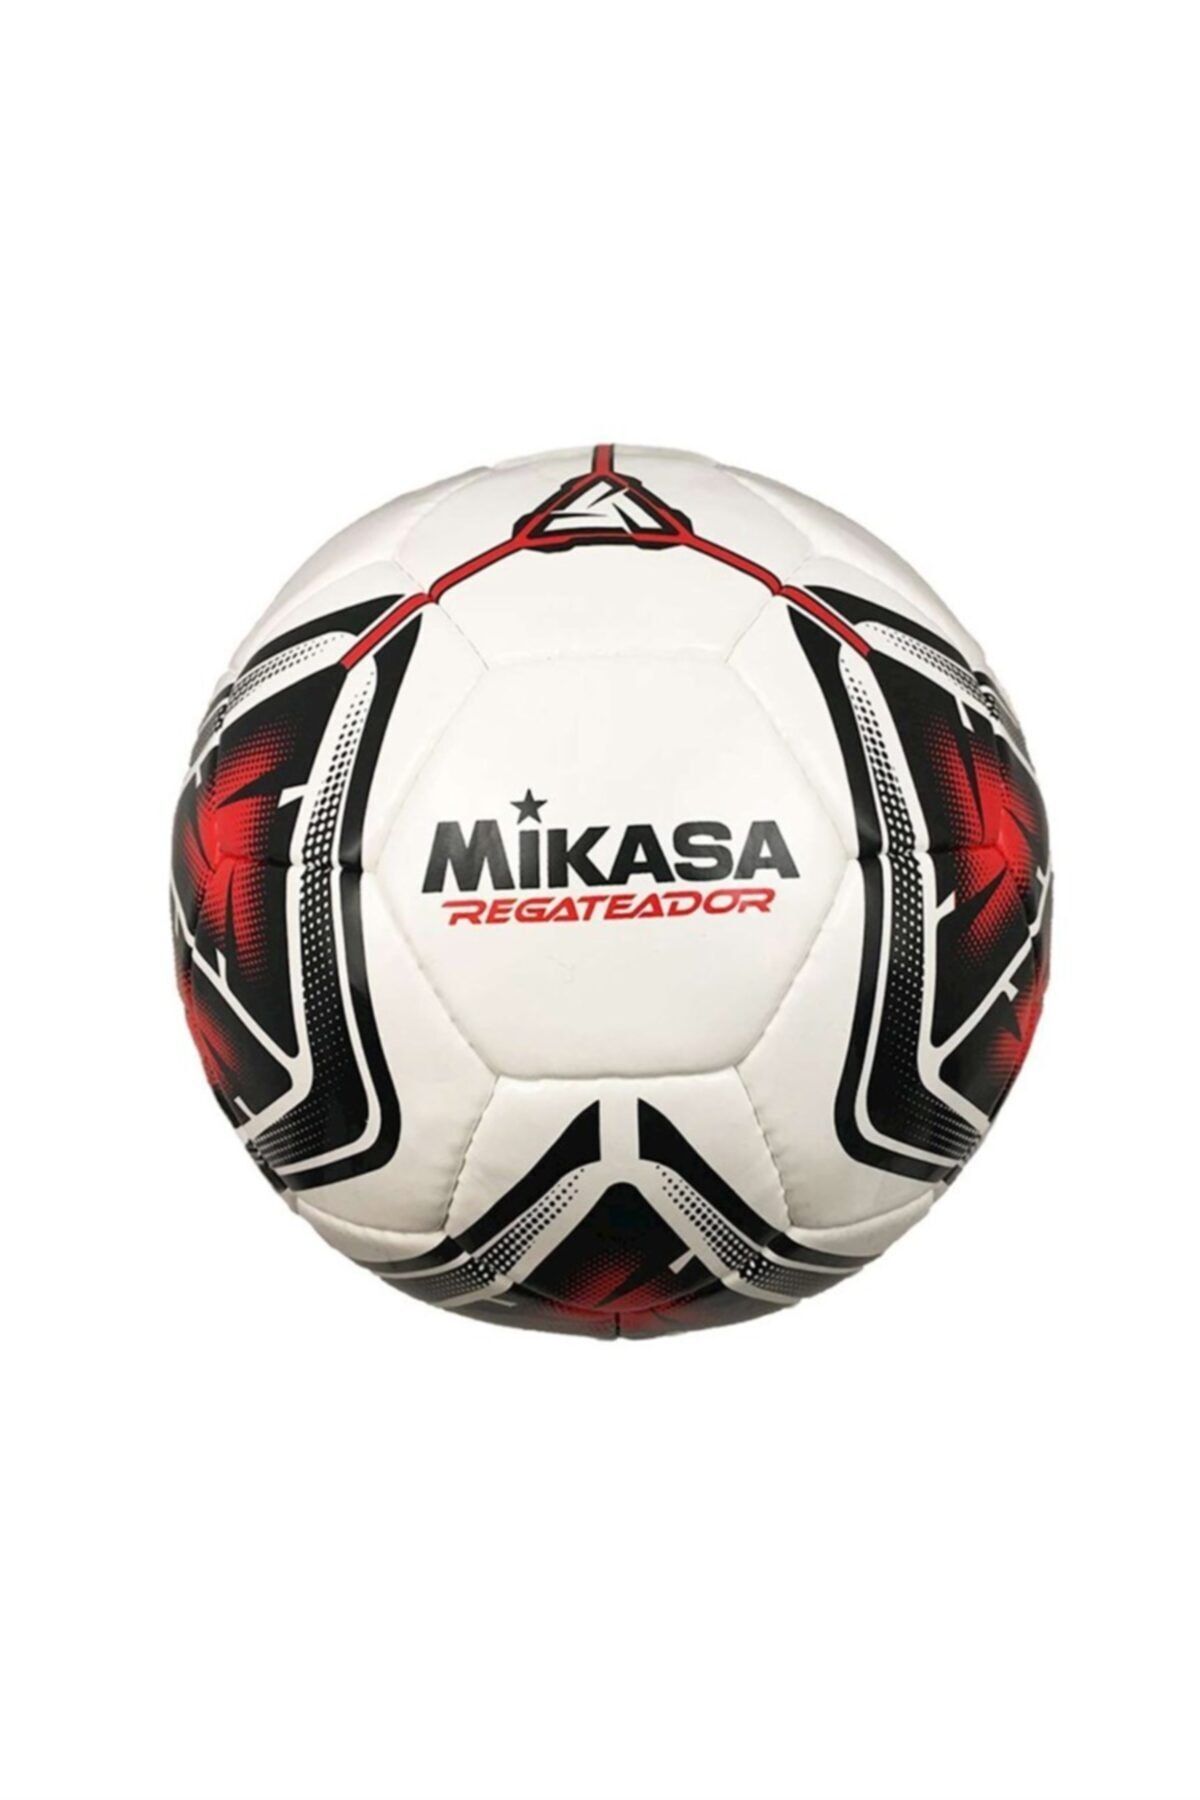 MIKASA Regateador4-r Beyaz/kırmızı El Dikişli Futbol Topu (Sıze 4)